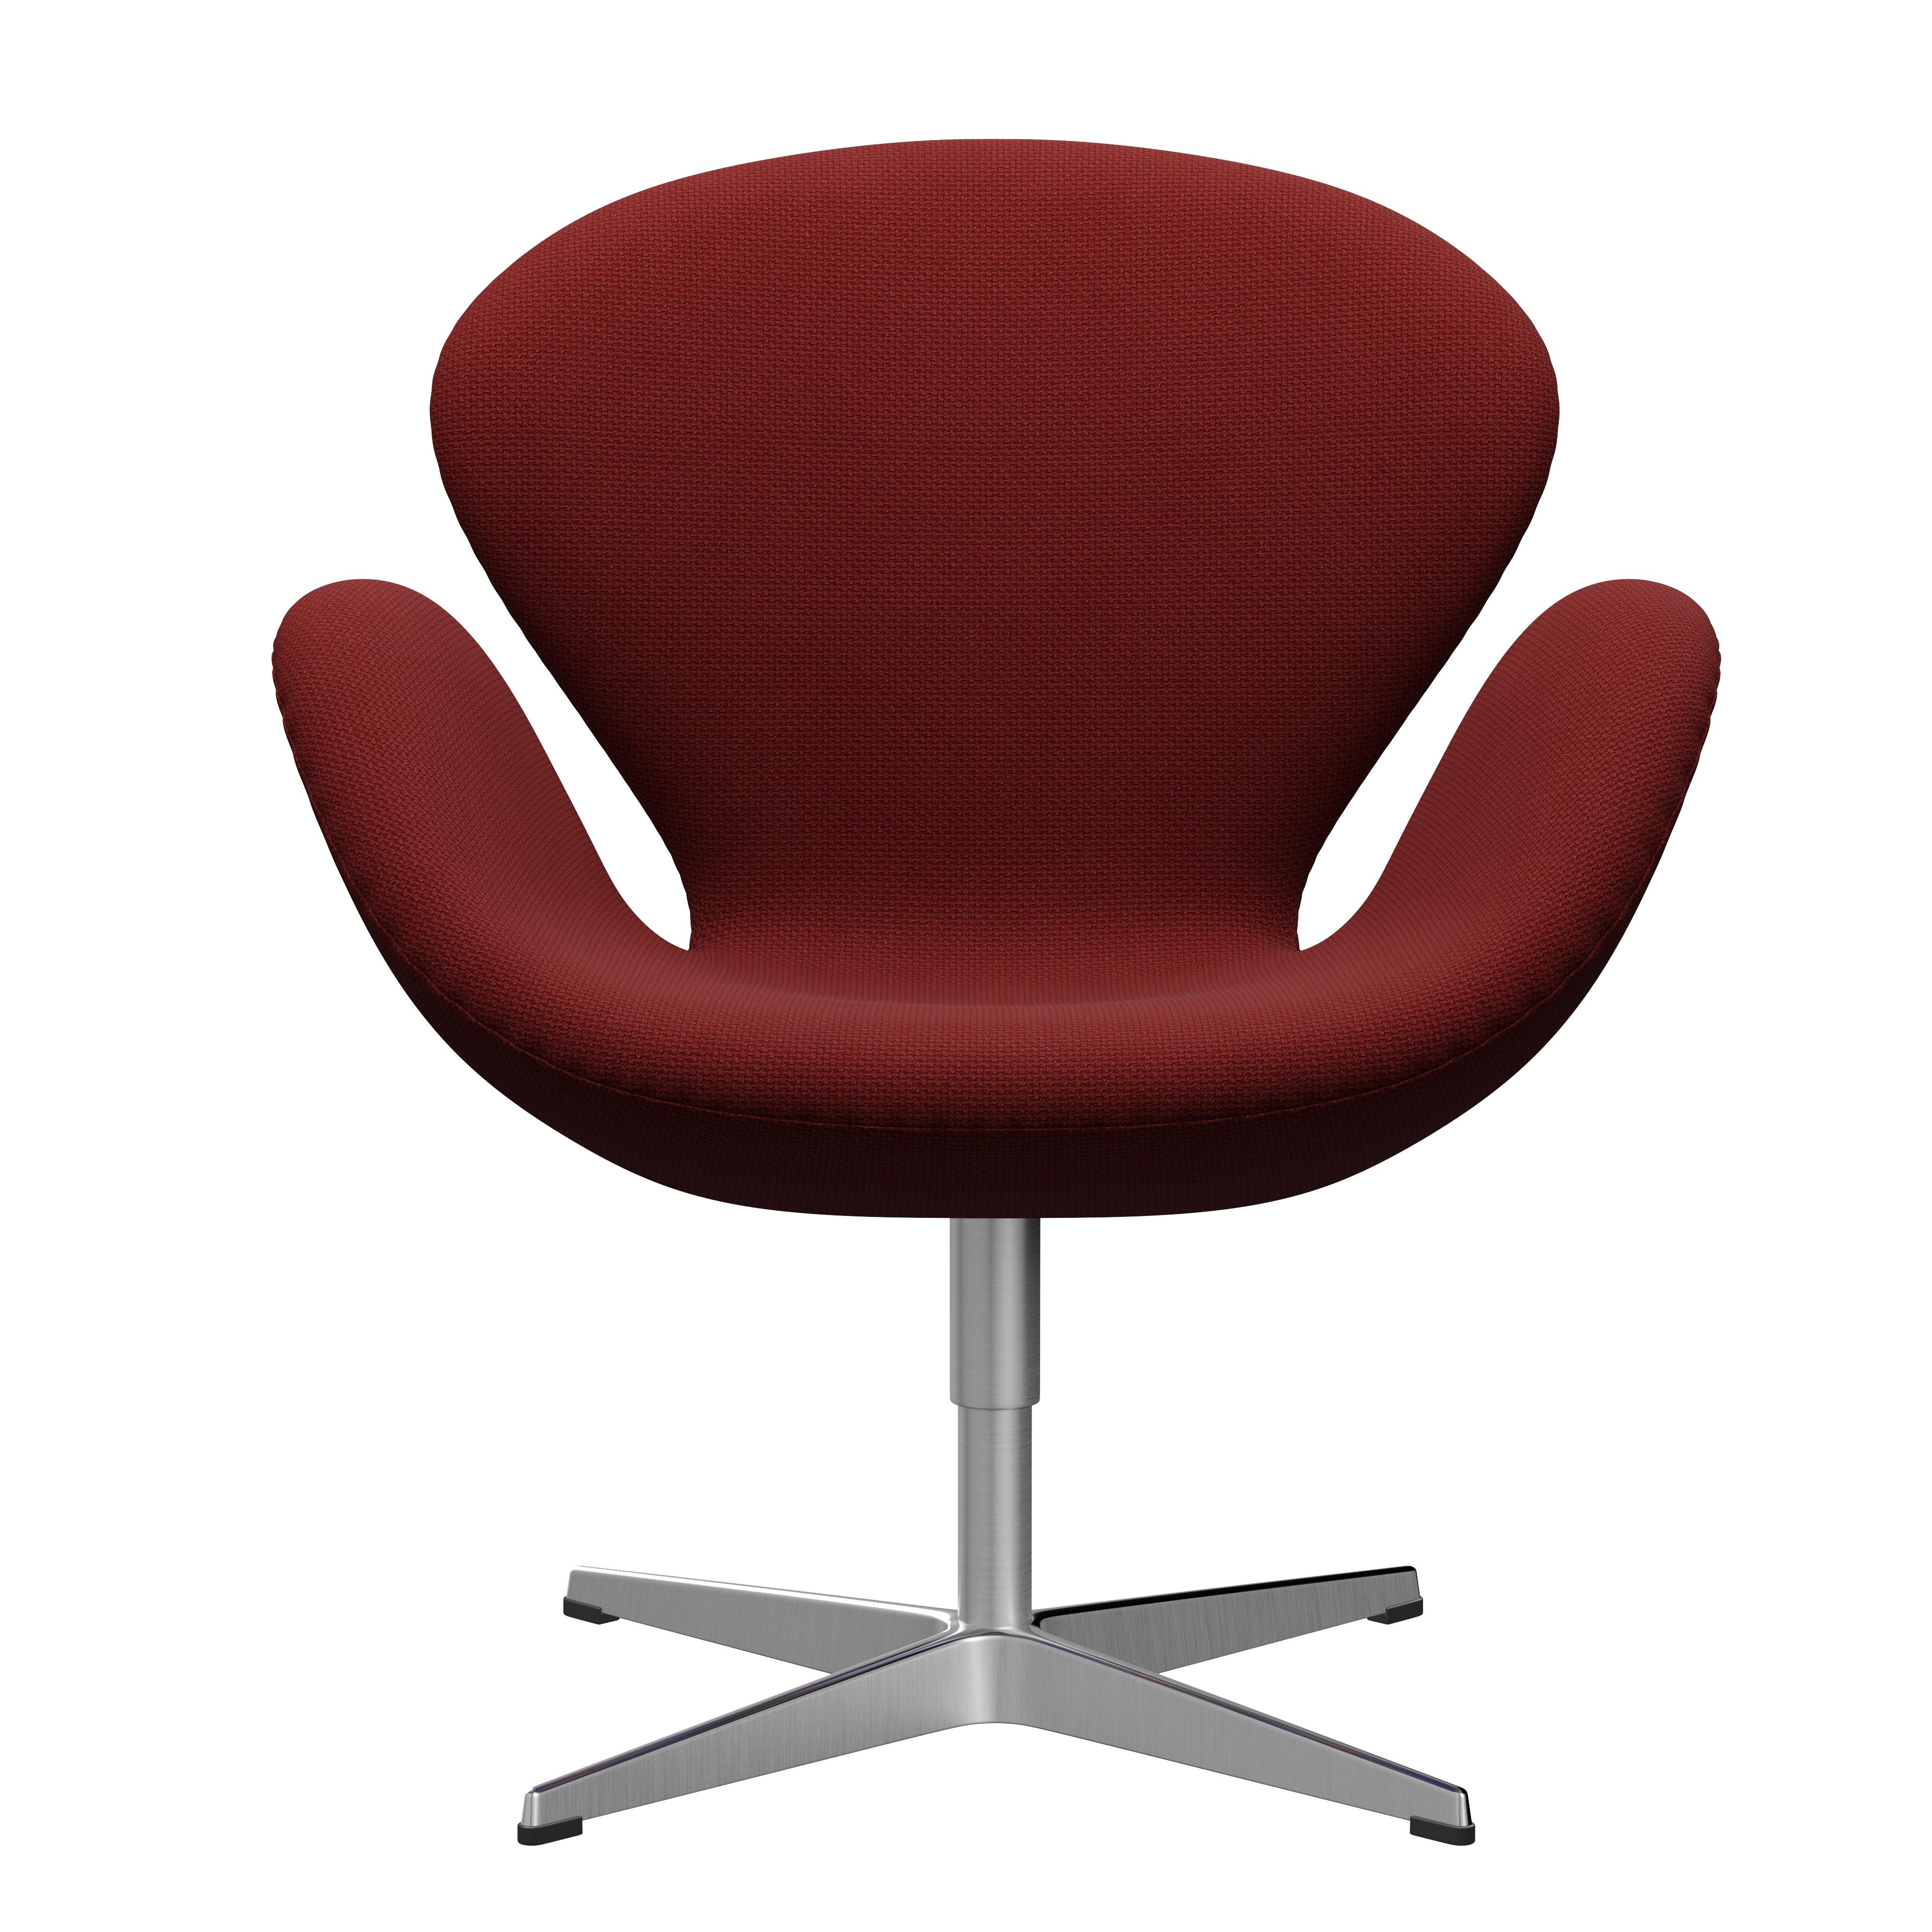 Arne Jacobsen 'Swan' Chair for Fritz Hansen in Fabric Upholstery (Cat. 1) For Sale 7